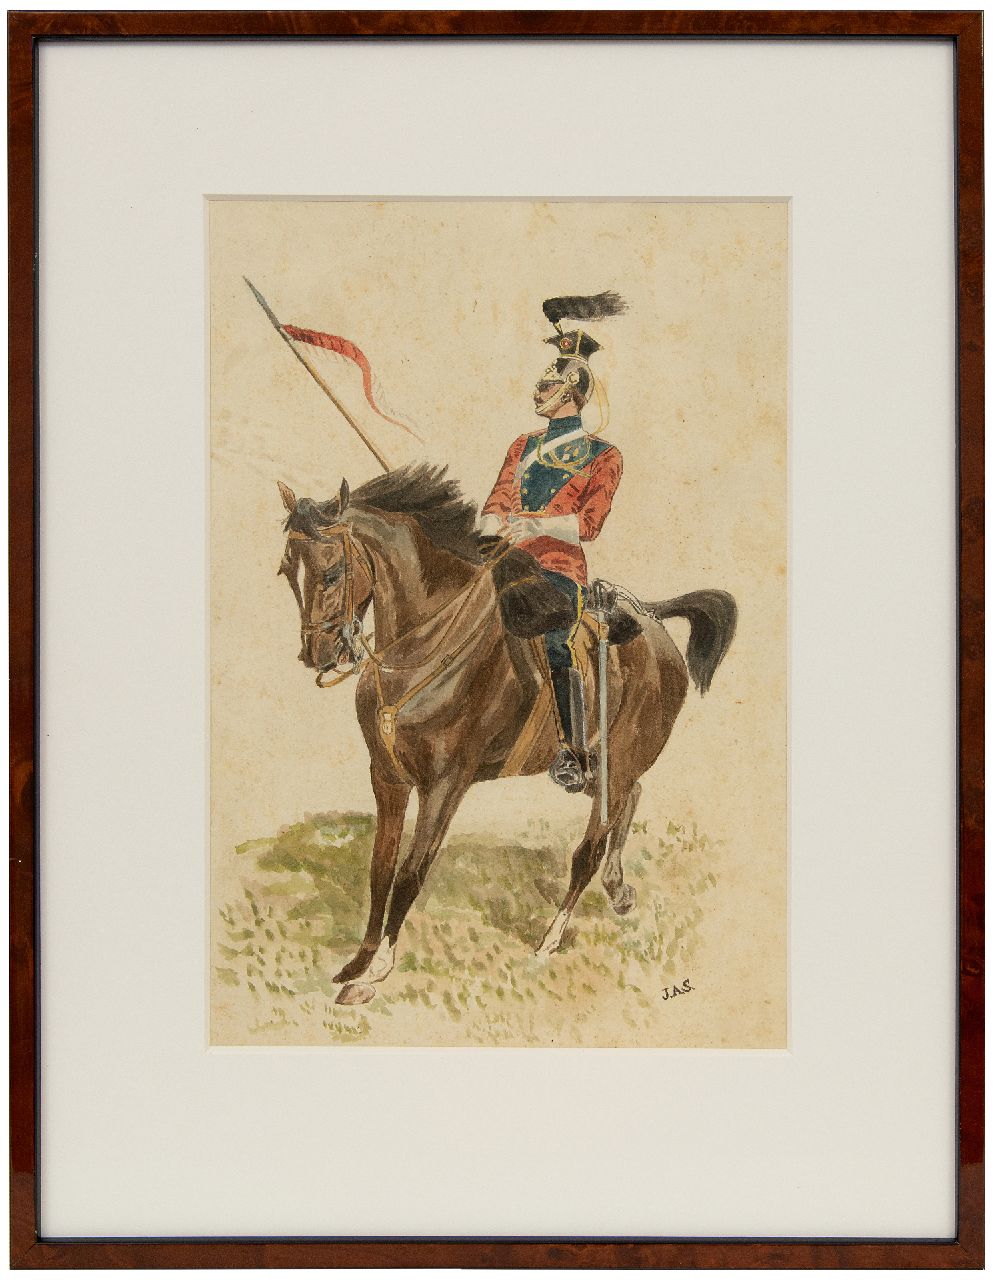 Staring W.C.  | Willem Constantijn Staring | Aquarellen en tekeningen te koop aangeboden | Cavalerist te paard, aquarel op papier 30,9 x 21,0 cm